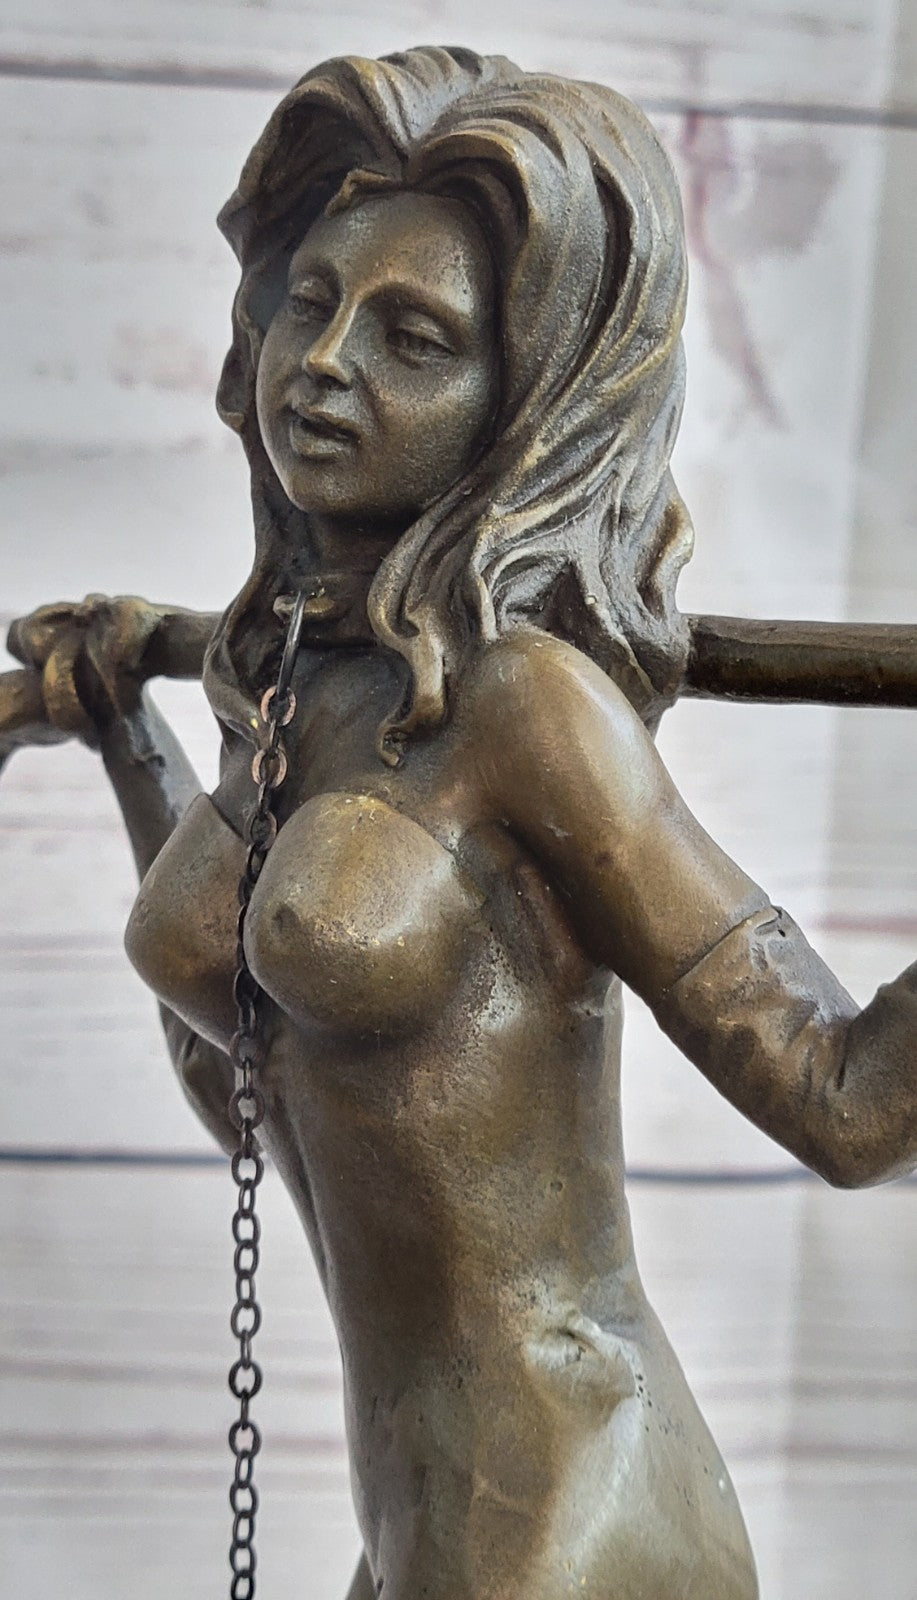 German Sexual Nude Girl Sculpture Hot Cast Erotic Bronze Artist Art Figurine LRG